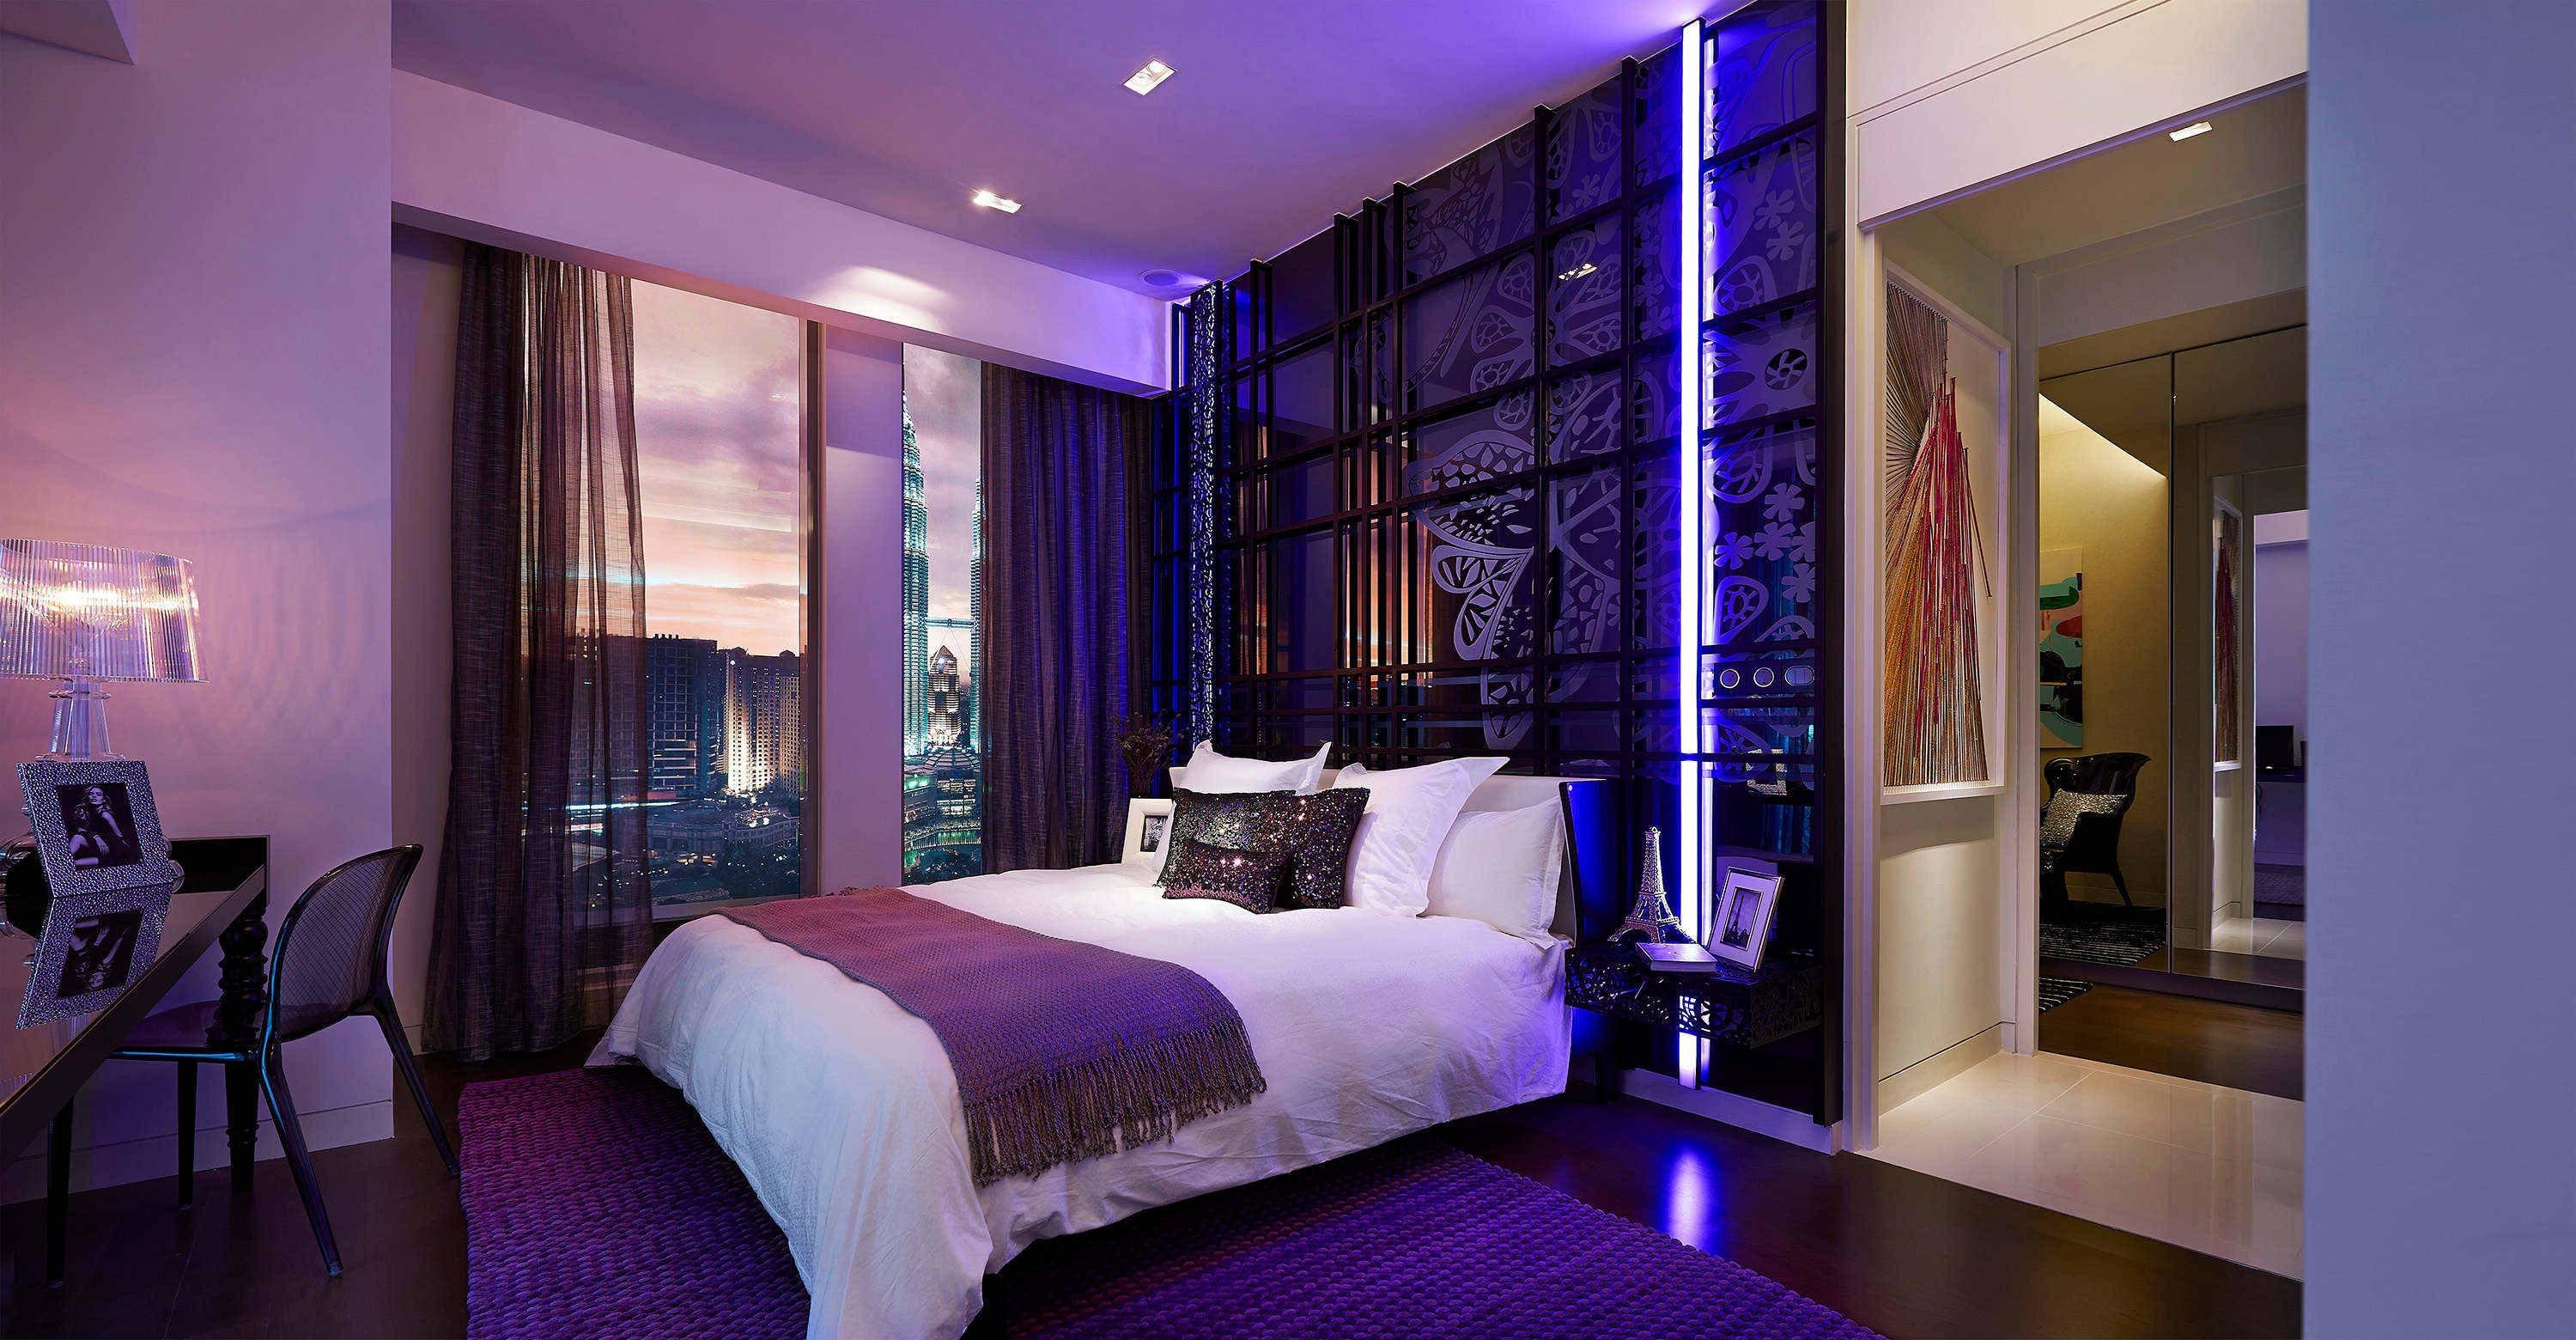 Темная красивая комната. Спальня в фиолетовых тонах. Спальня в сиреневых тонах. Фиолетовый интерьер спальни. Спальня в фиолетовом цвете.